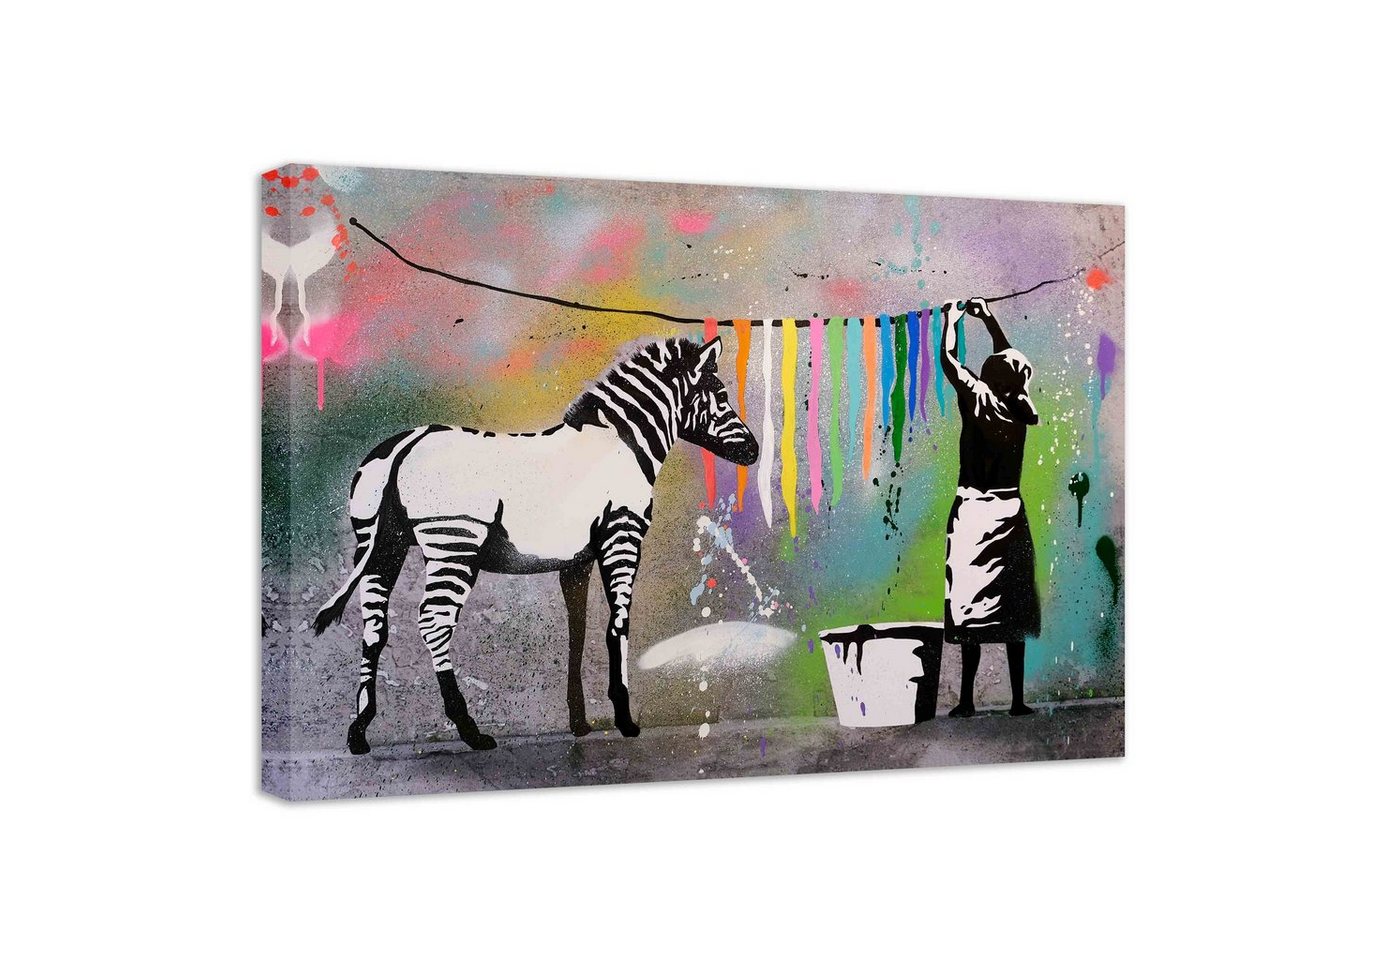 Leinwando Wandbild Banksy Bilder auf Leinwandbild Zebra Farbe/ Street Art graffiti fertig zum aufhängen von Leinwando